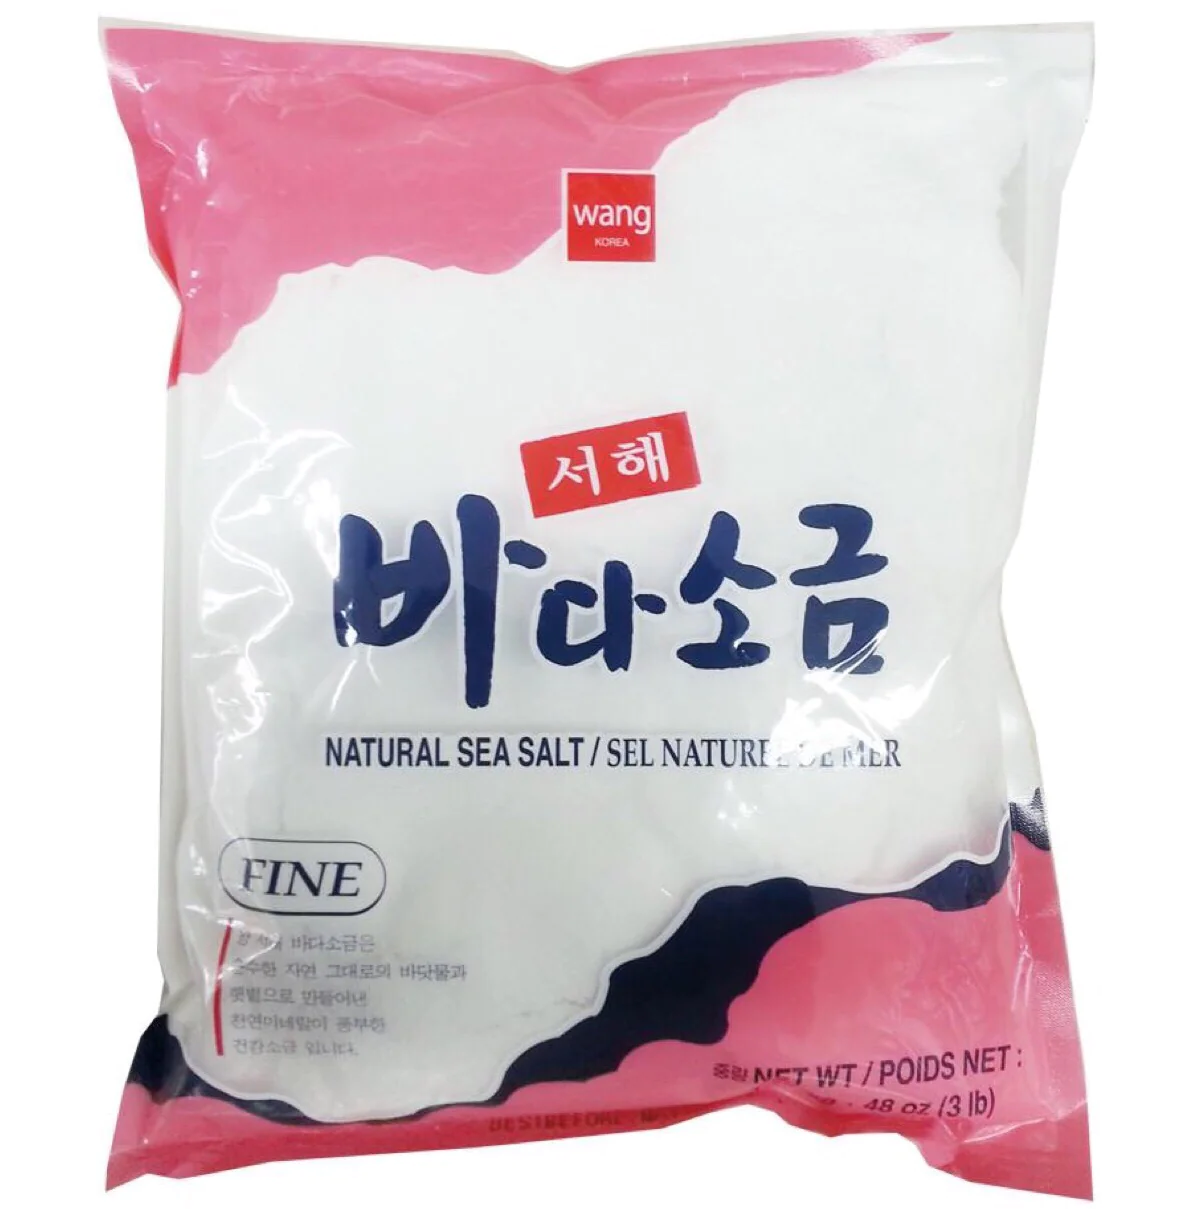 Wang Korea Korean Sea Salt Fine, 3lb